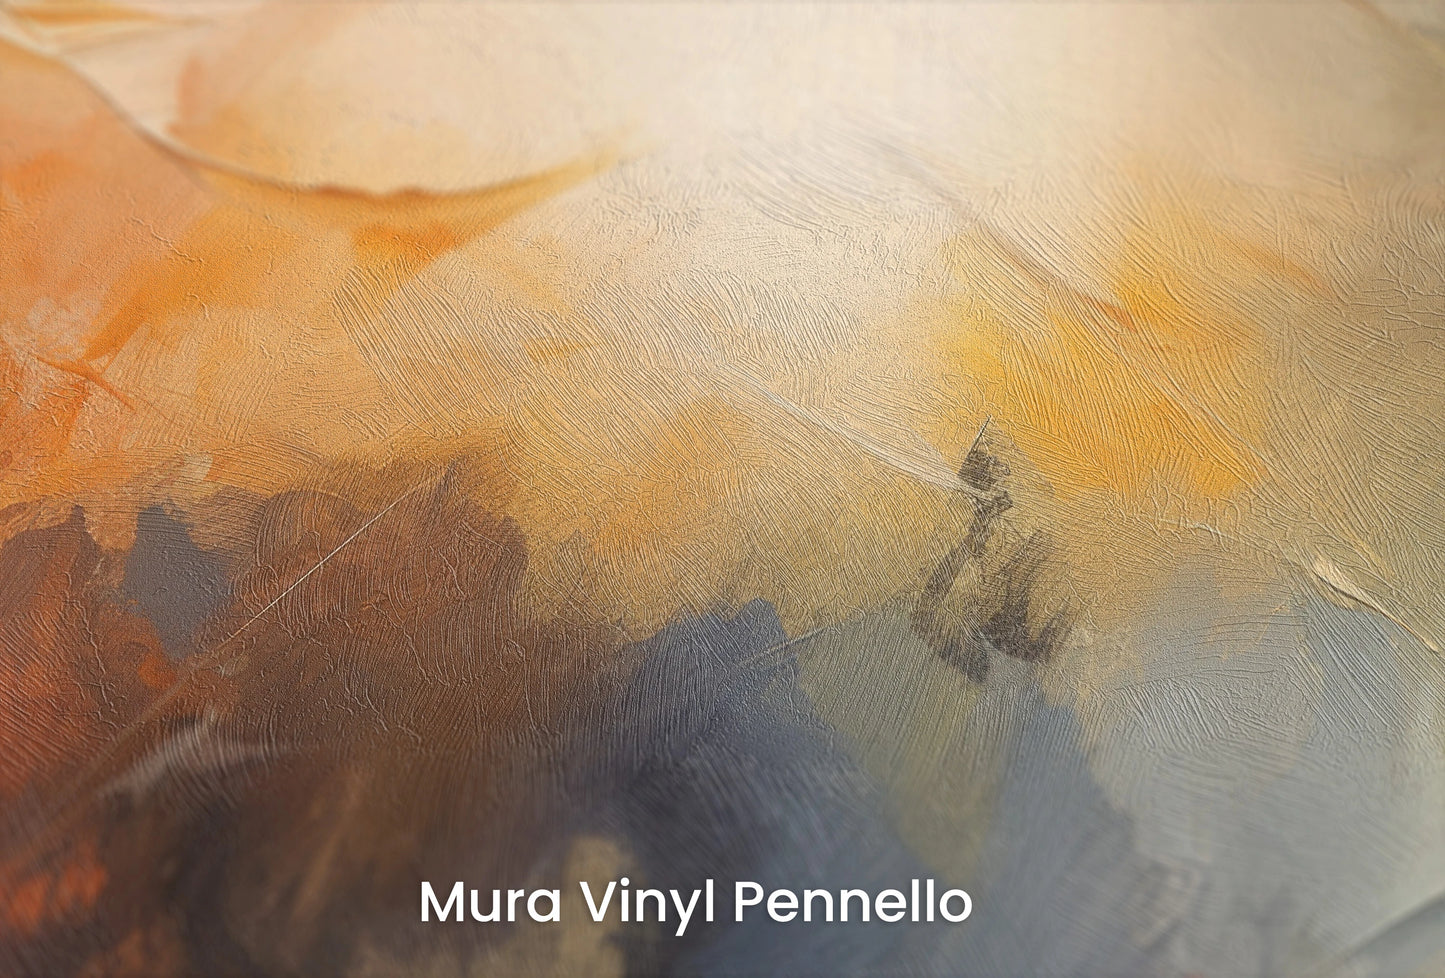 Zbliżenie na artystyczną fototapetę o nazwie Abstract Horizons #2 na podłożu Mura Vinyl Pennello - faktura pociągnięć pędzla malarskiego.